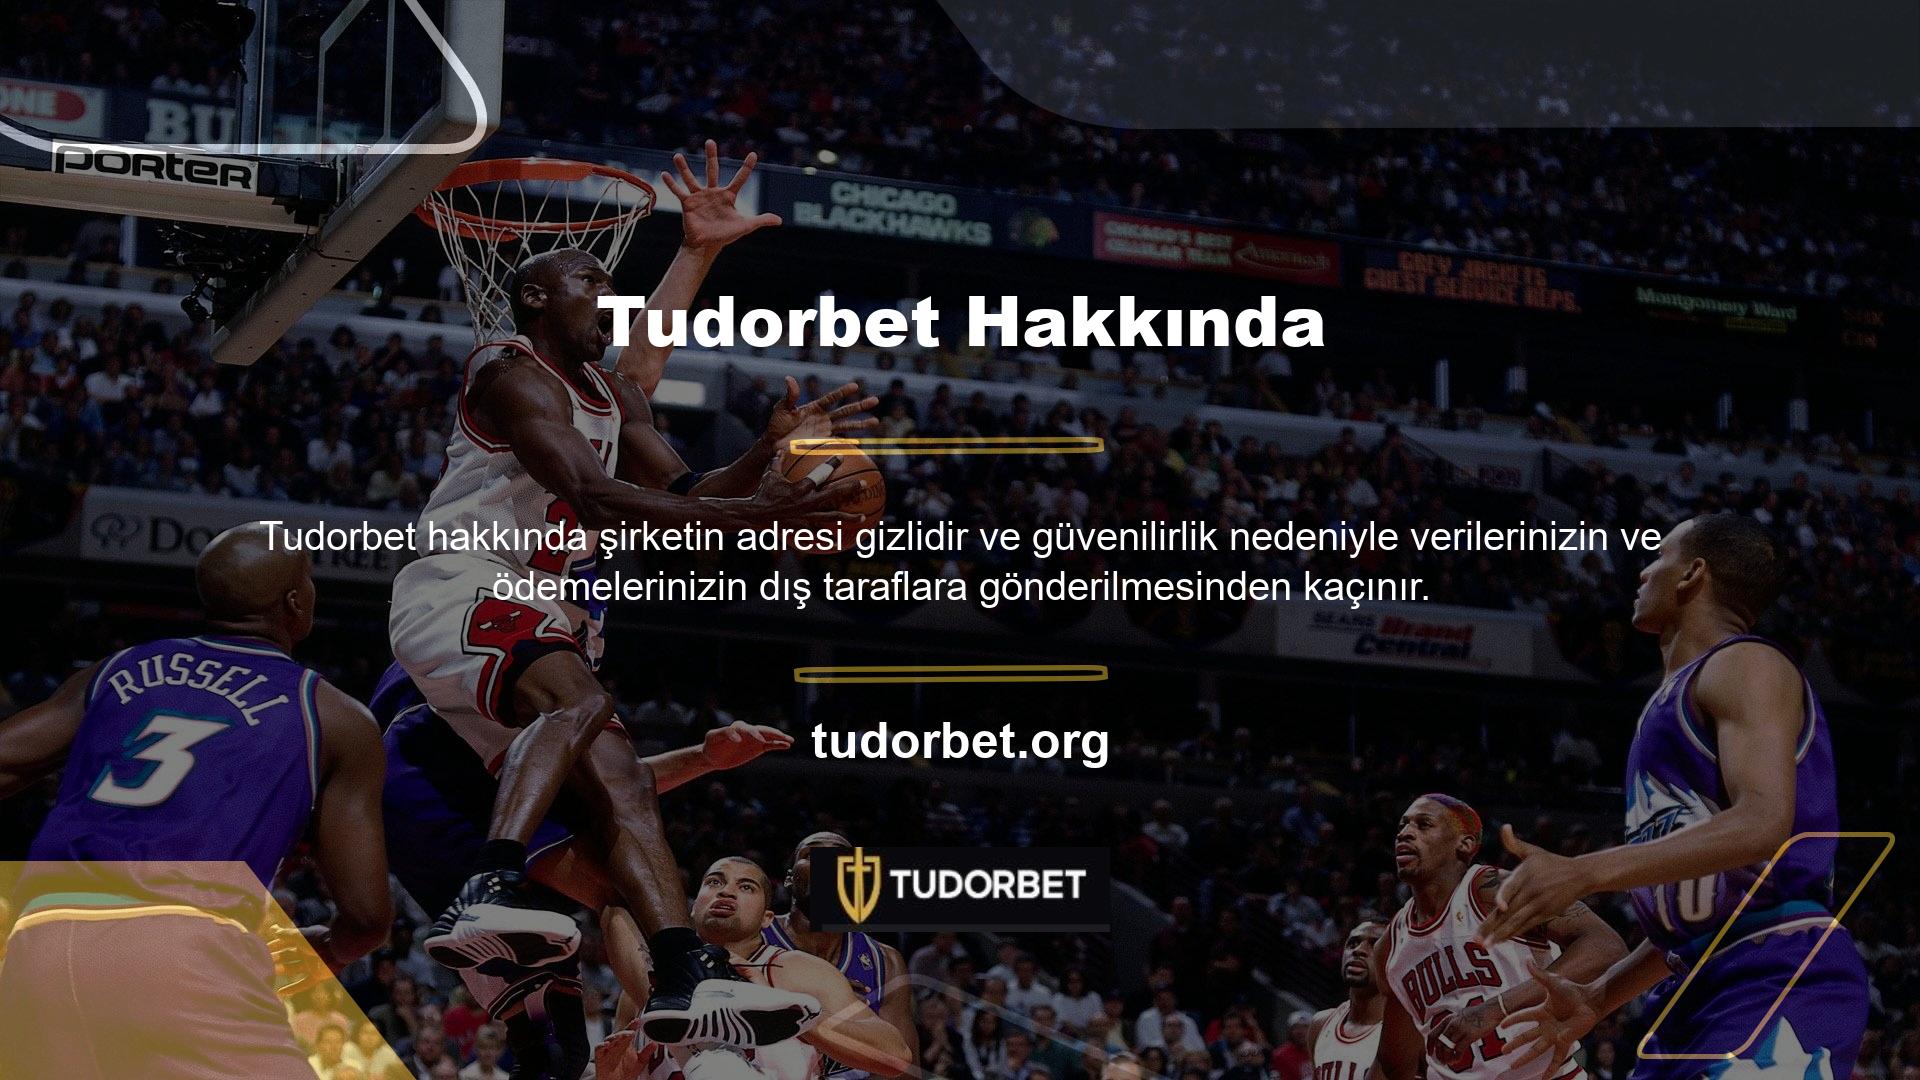 Tudorbet canlı TV platformunda tüm Avrupa spor etkinliklerini ücretsiz izleyin